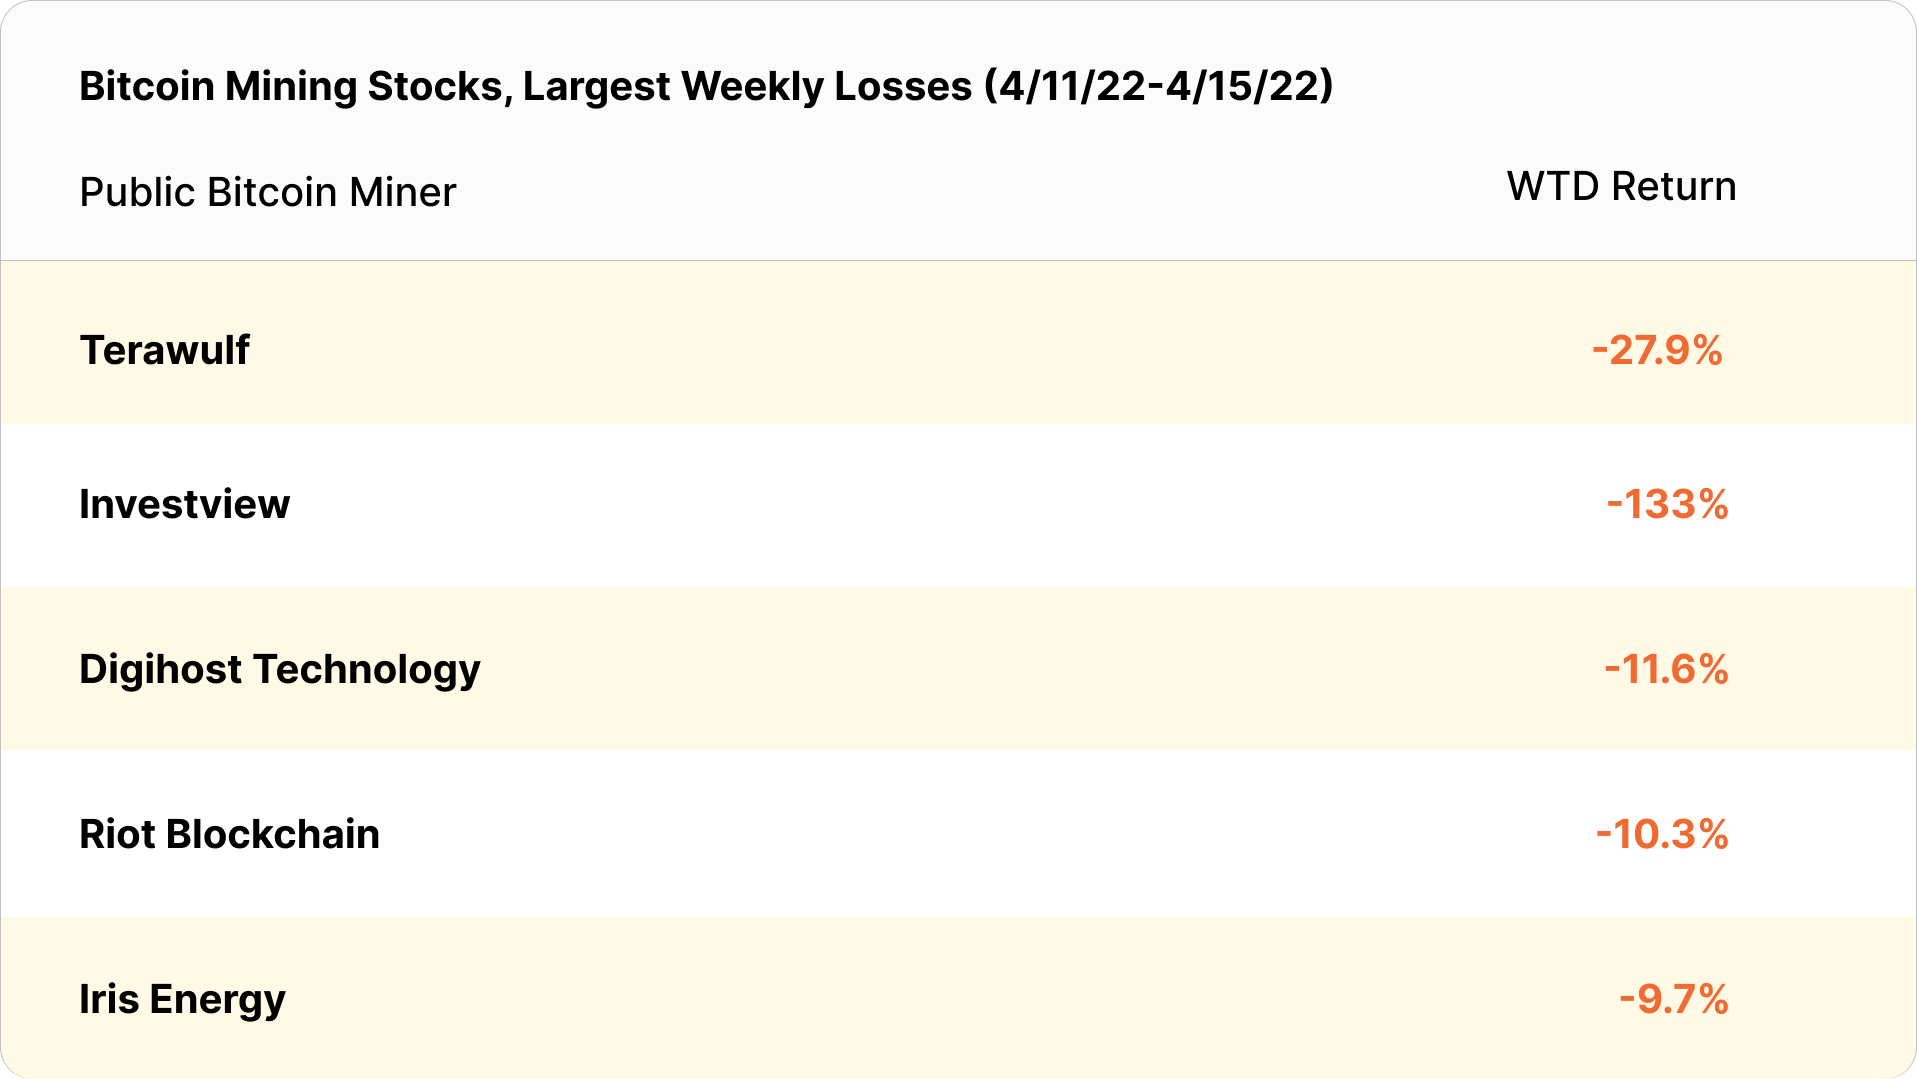 bitcoin mining stocks weekly losses (April 11 - April 15, 2022)